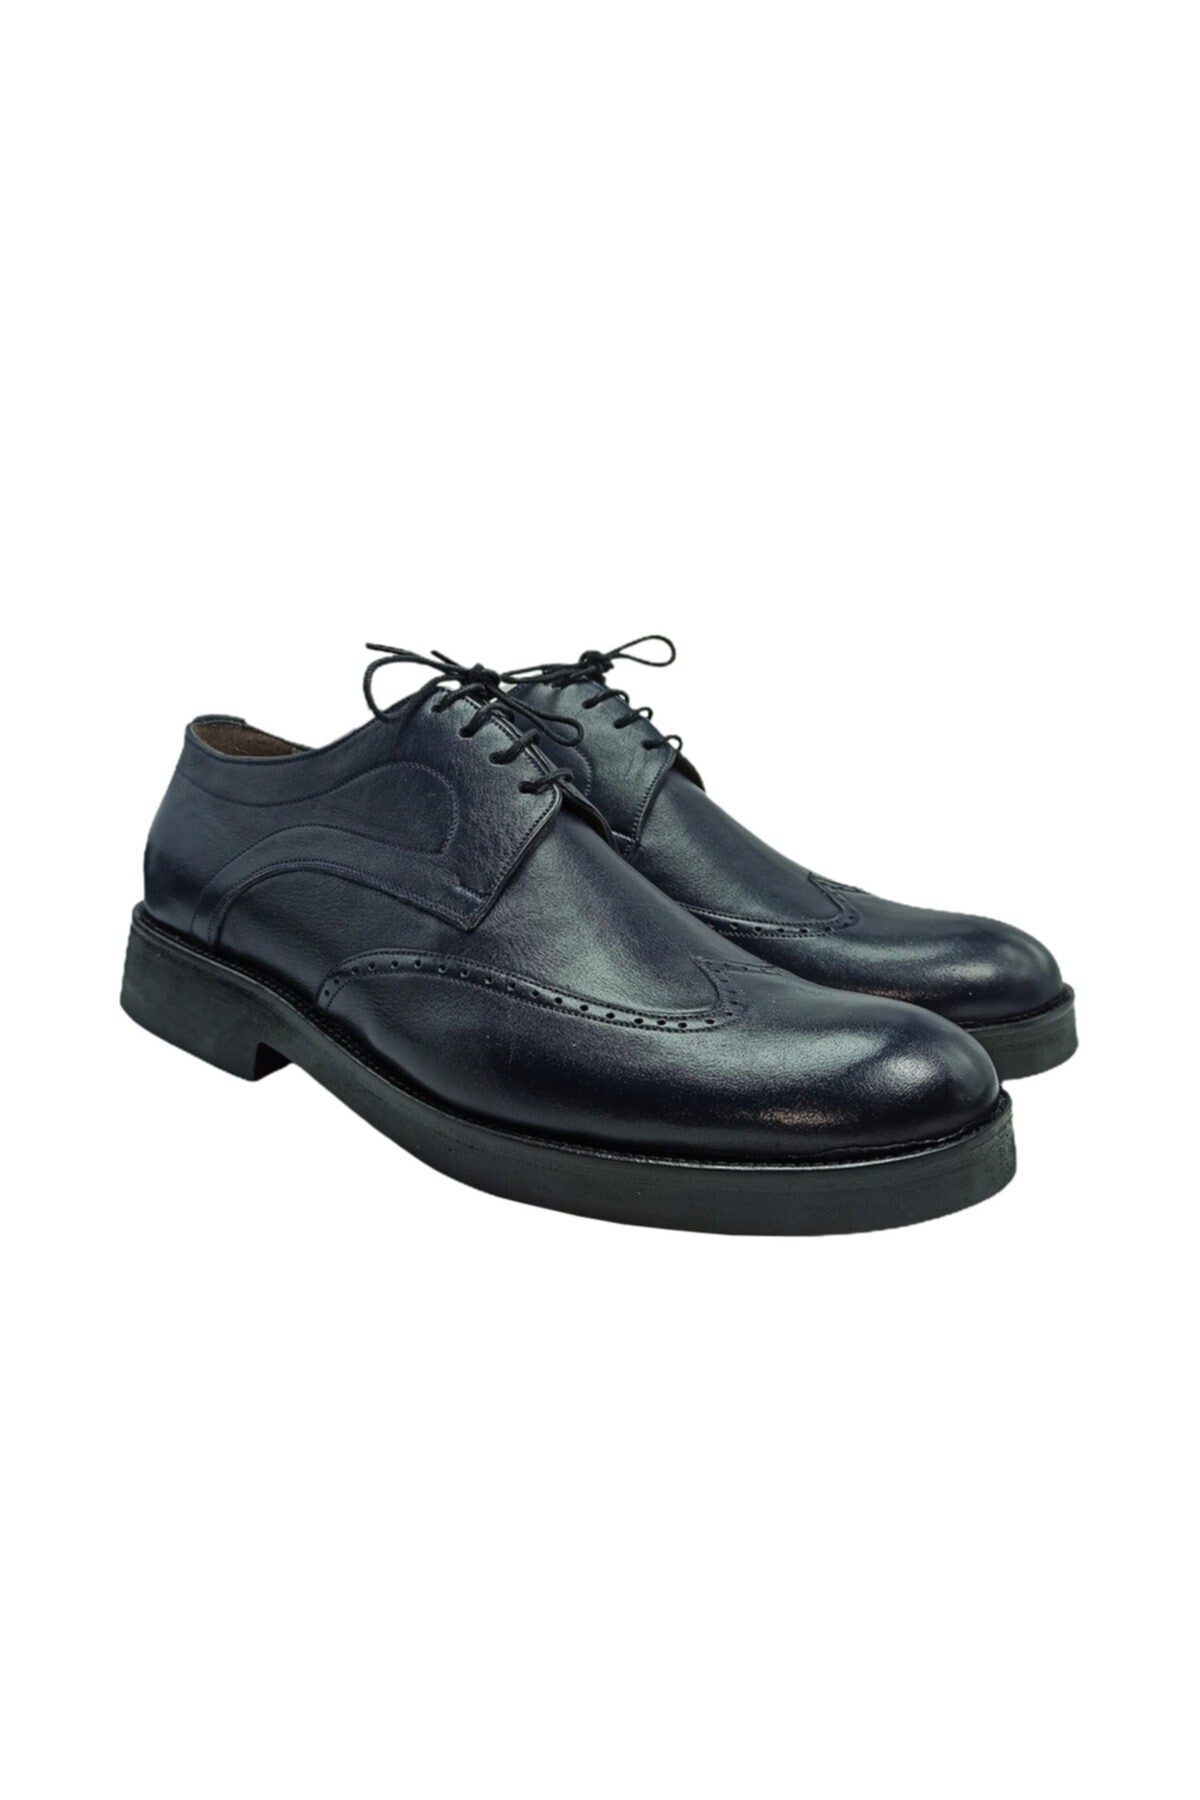 Lacivert Klasik Bağcıklı Erkek Ayakkabı - Hakiki Deri - El Yapimi